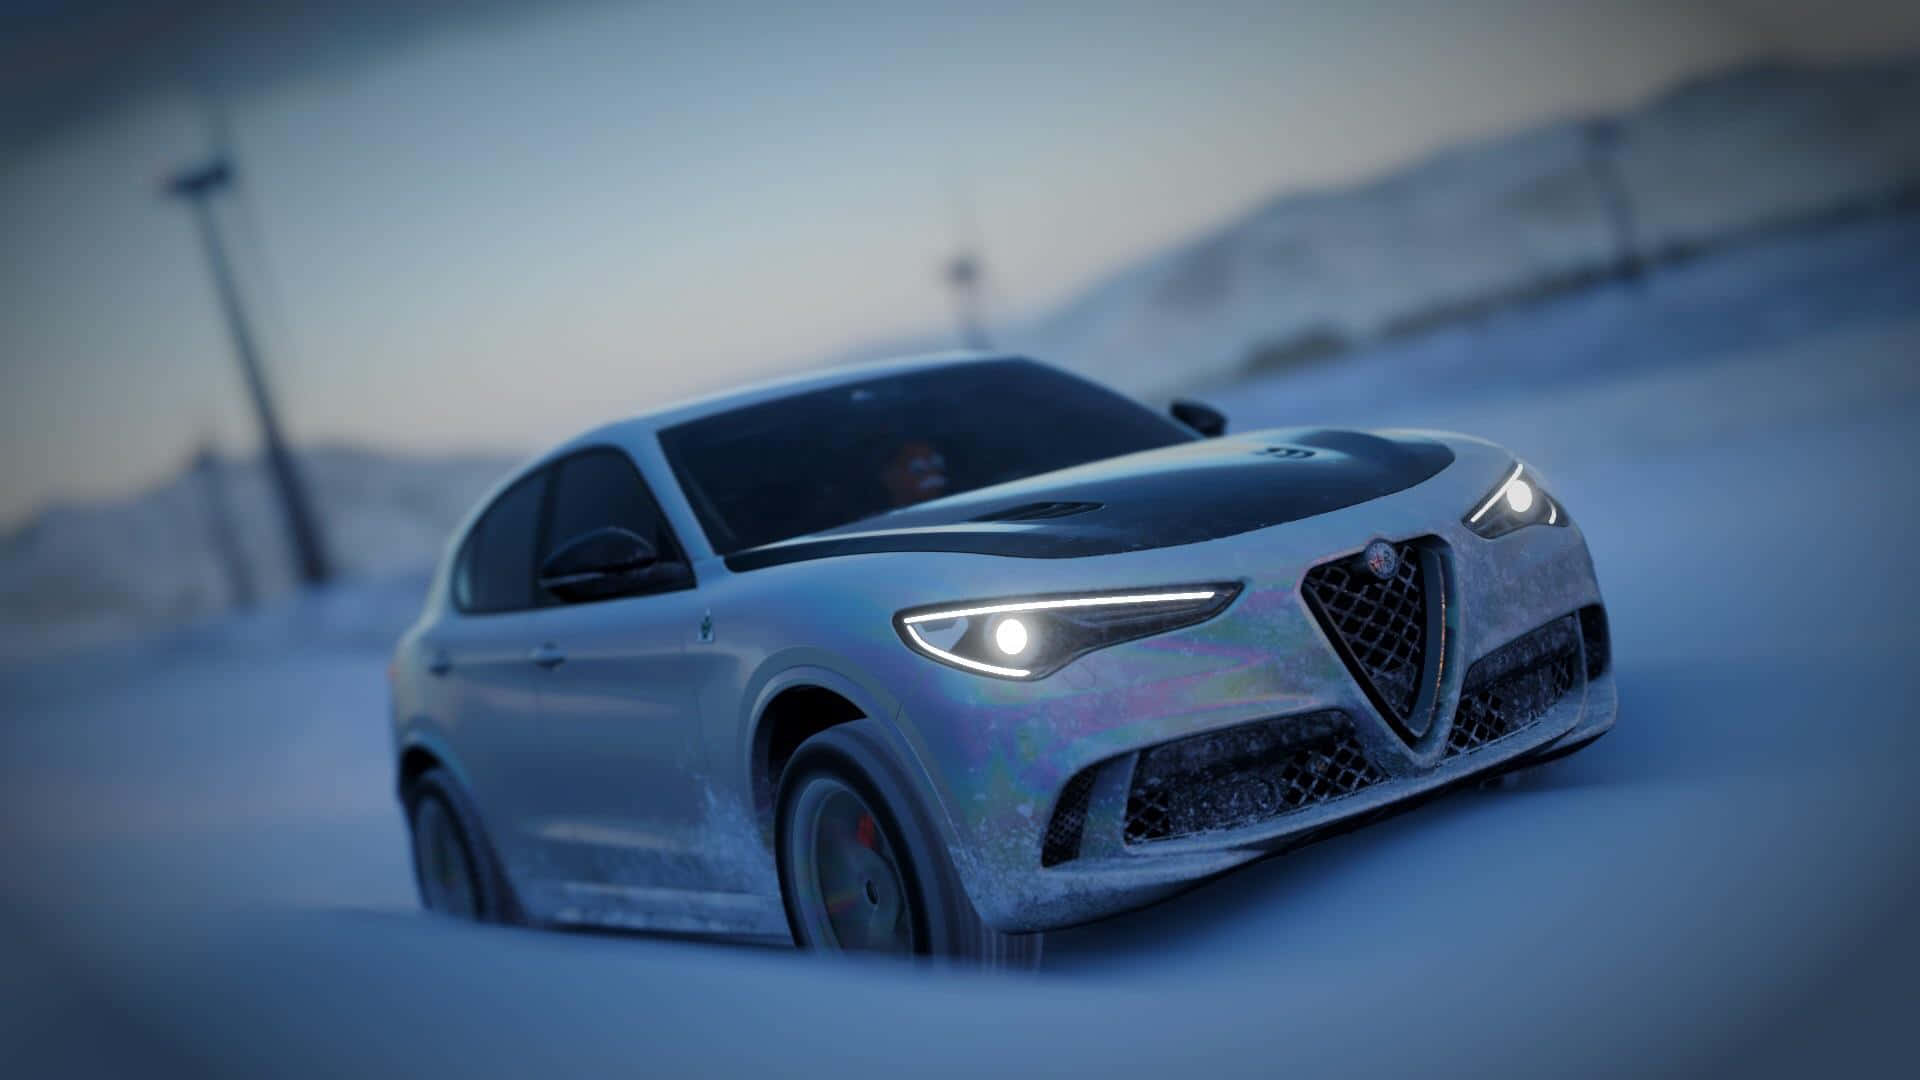 Alfa Romeo Stelvio driving on a scenic road Wallpaper